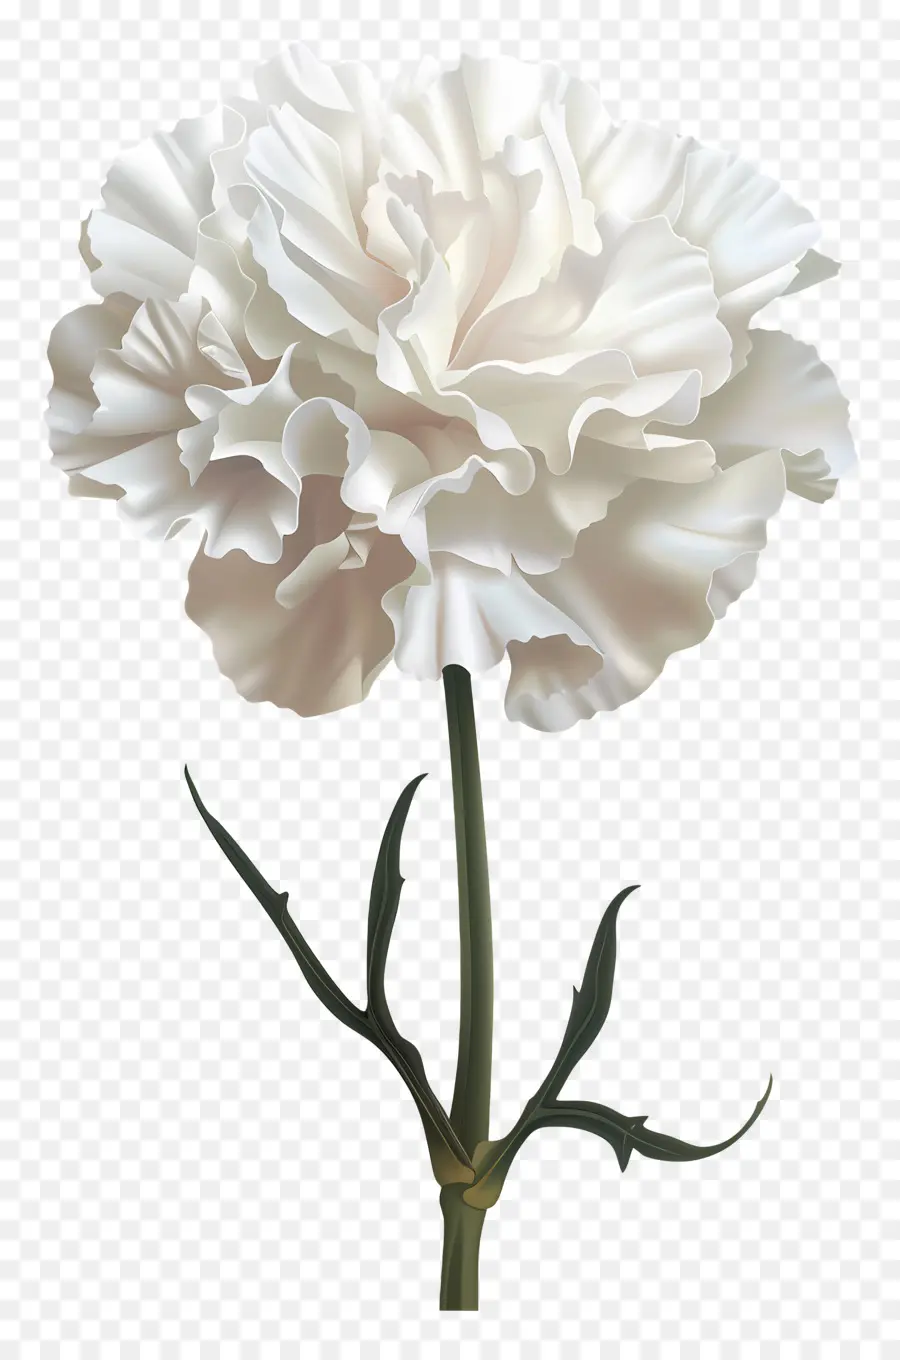 gambo del fiore - Carnazione bianca con petali appassiti ma freschi